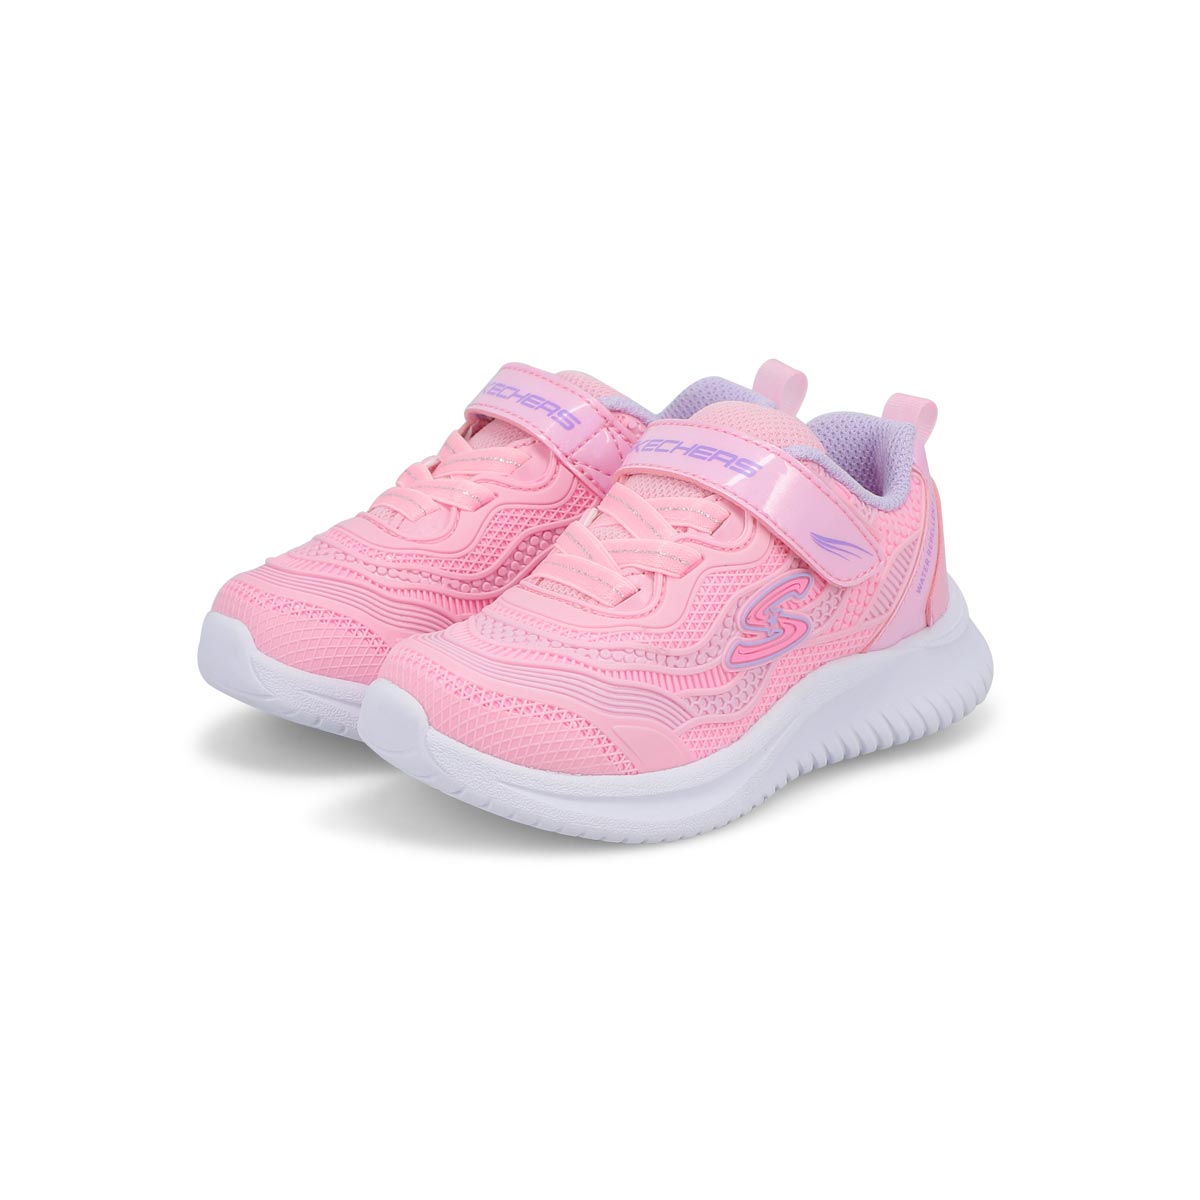 Infants' Jumpsters Sneaker - Pink/Purple